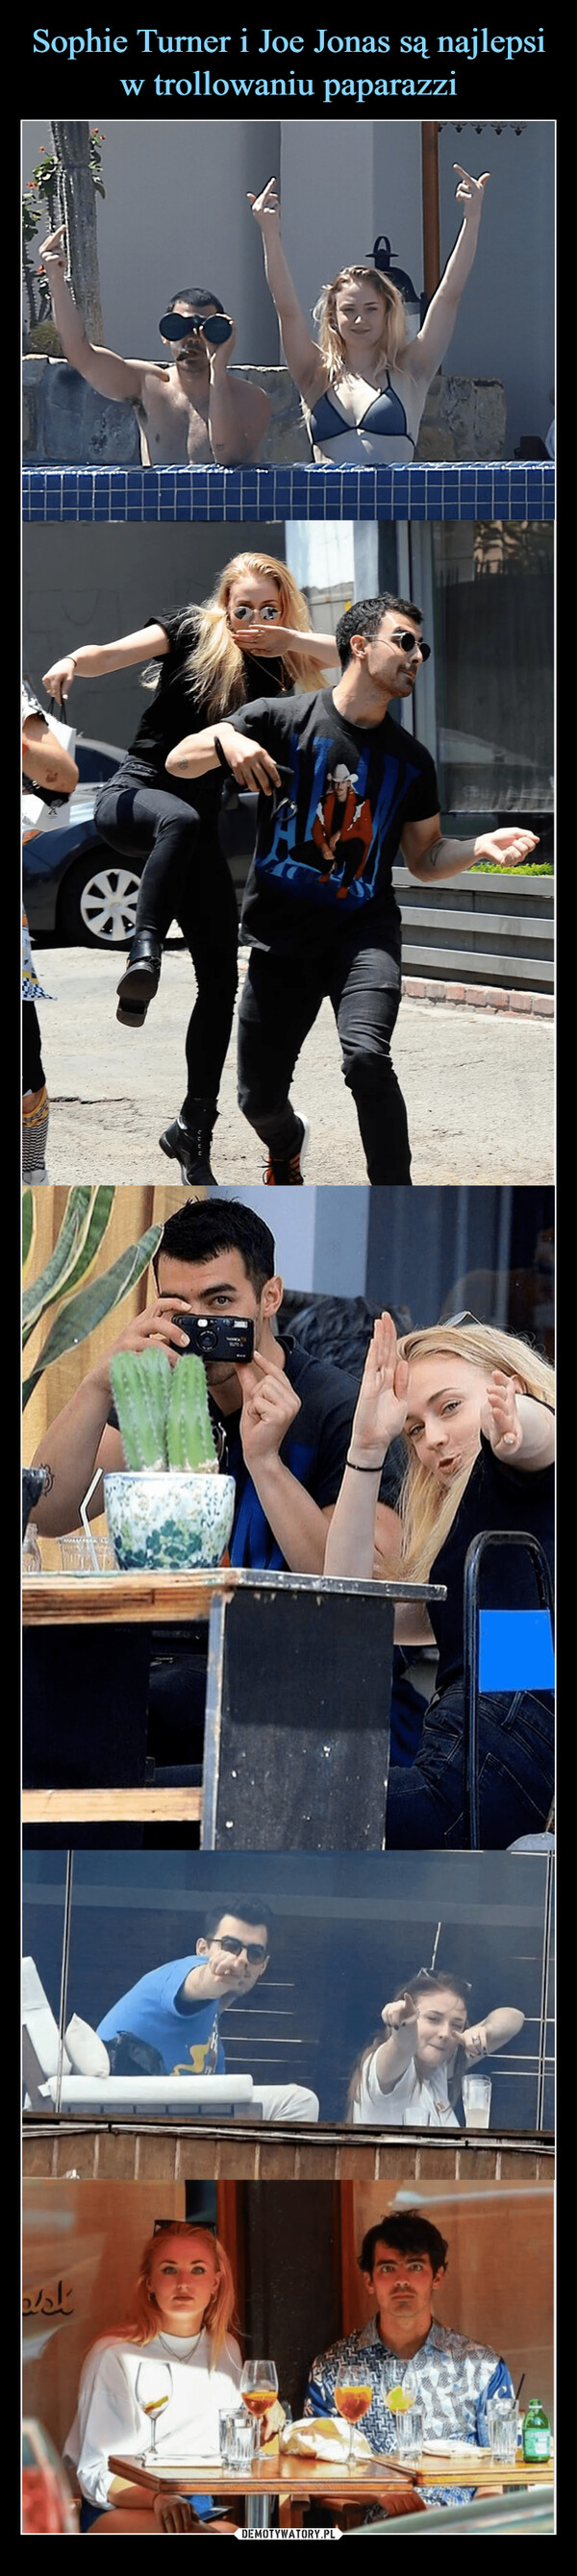 Sophie Turner i Joe Jonas są najlepsi w trollowaniu paparazzi